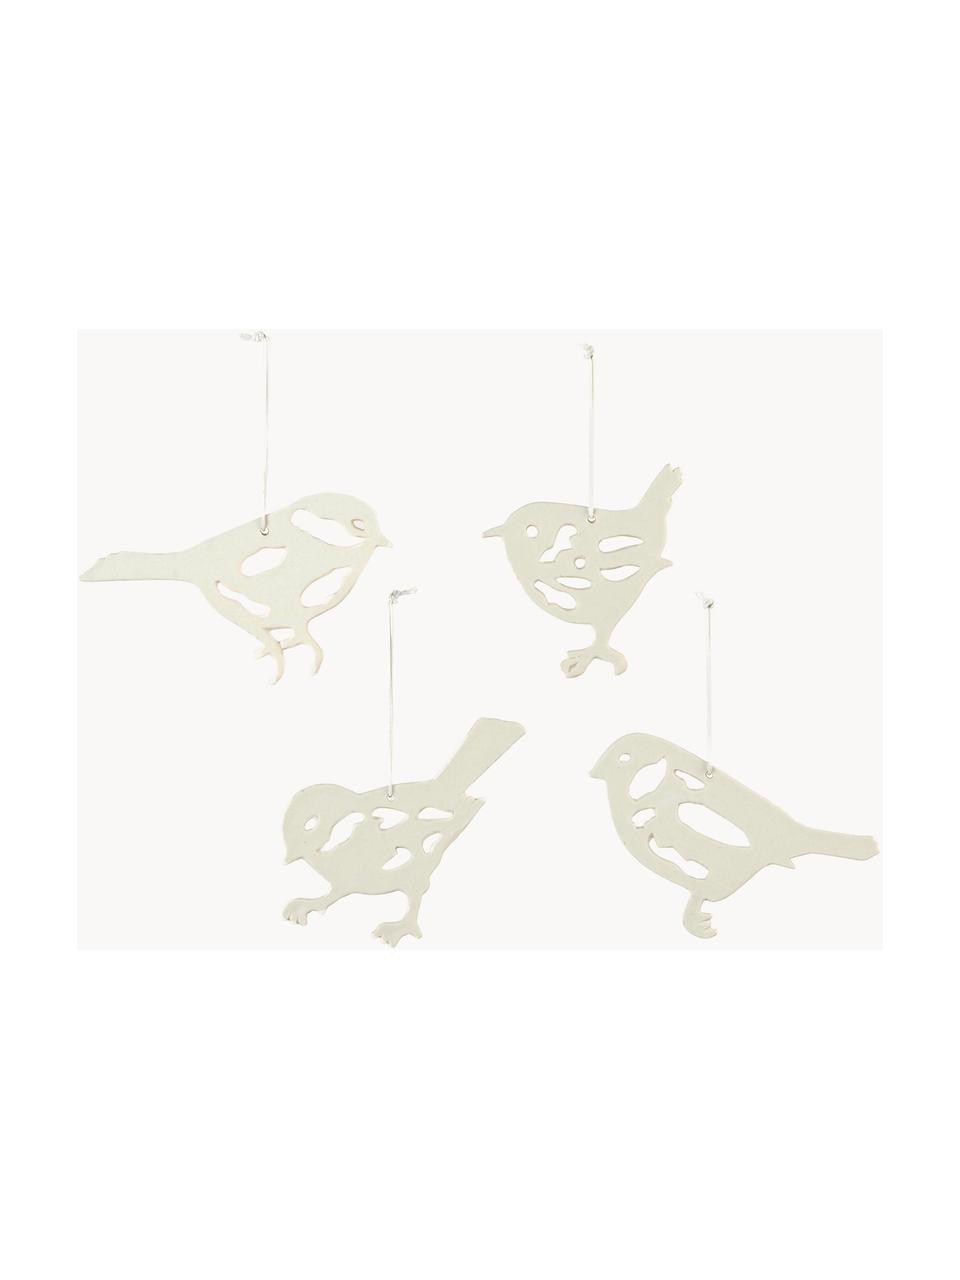 Baumanhänger Alba Bird, 4er-Set, Porzellan, Weiß, B 14 x H 8 cm